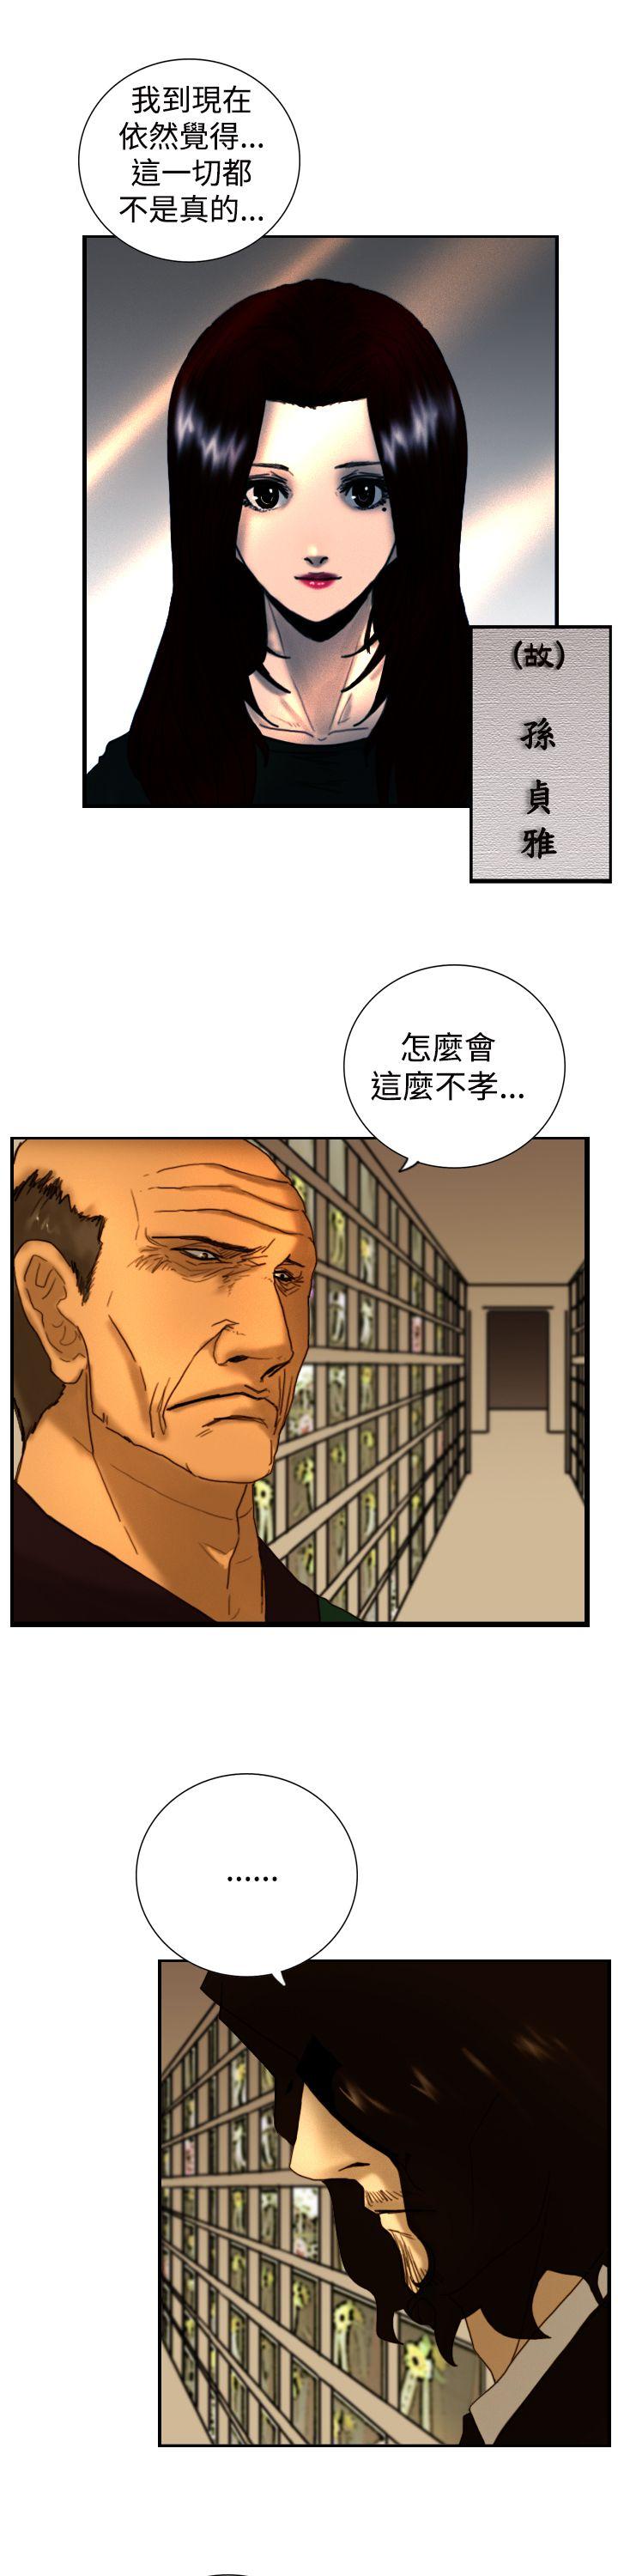 韩国污漫画 覺醒(完結) 第8话爸爸的谜语 27